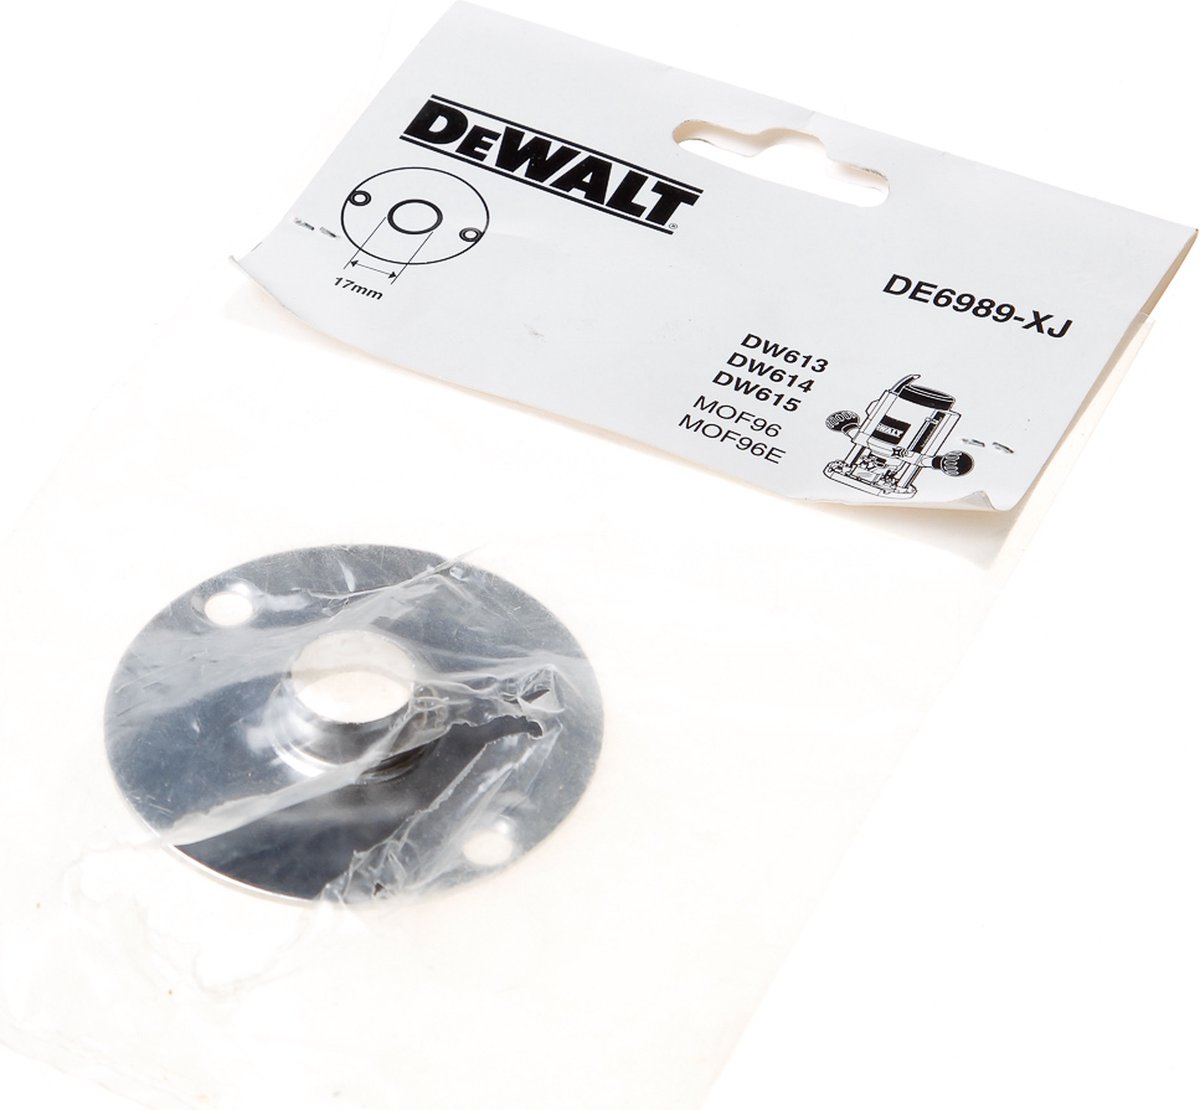 DeWALT DE6989 17mm kopieerring voor bovenfrees DW614 / DW615 / D26203 /  D26204 | bol.com